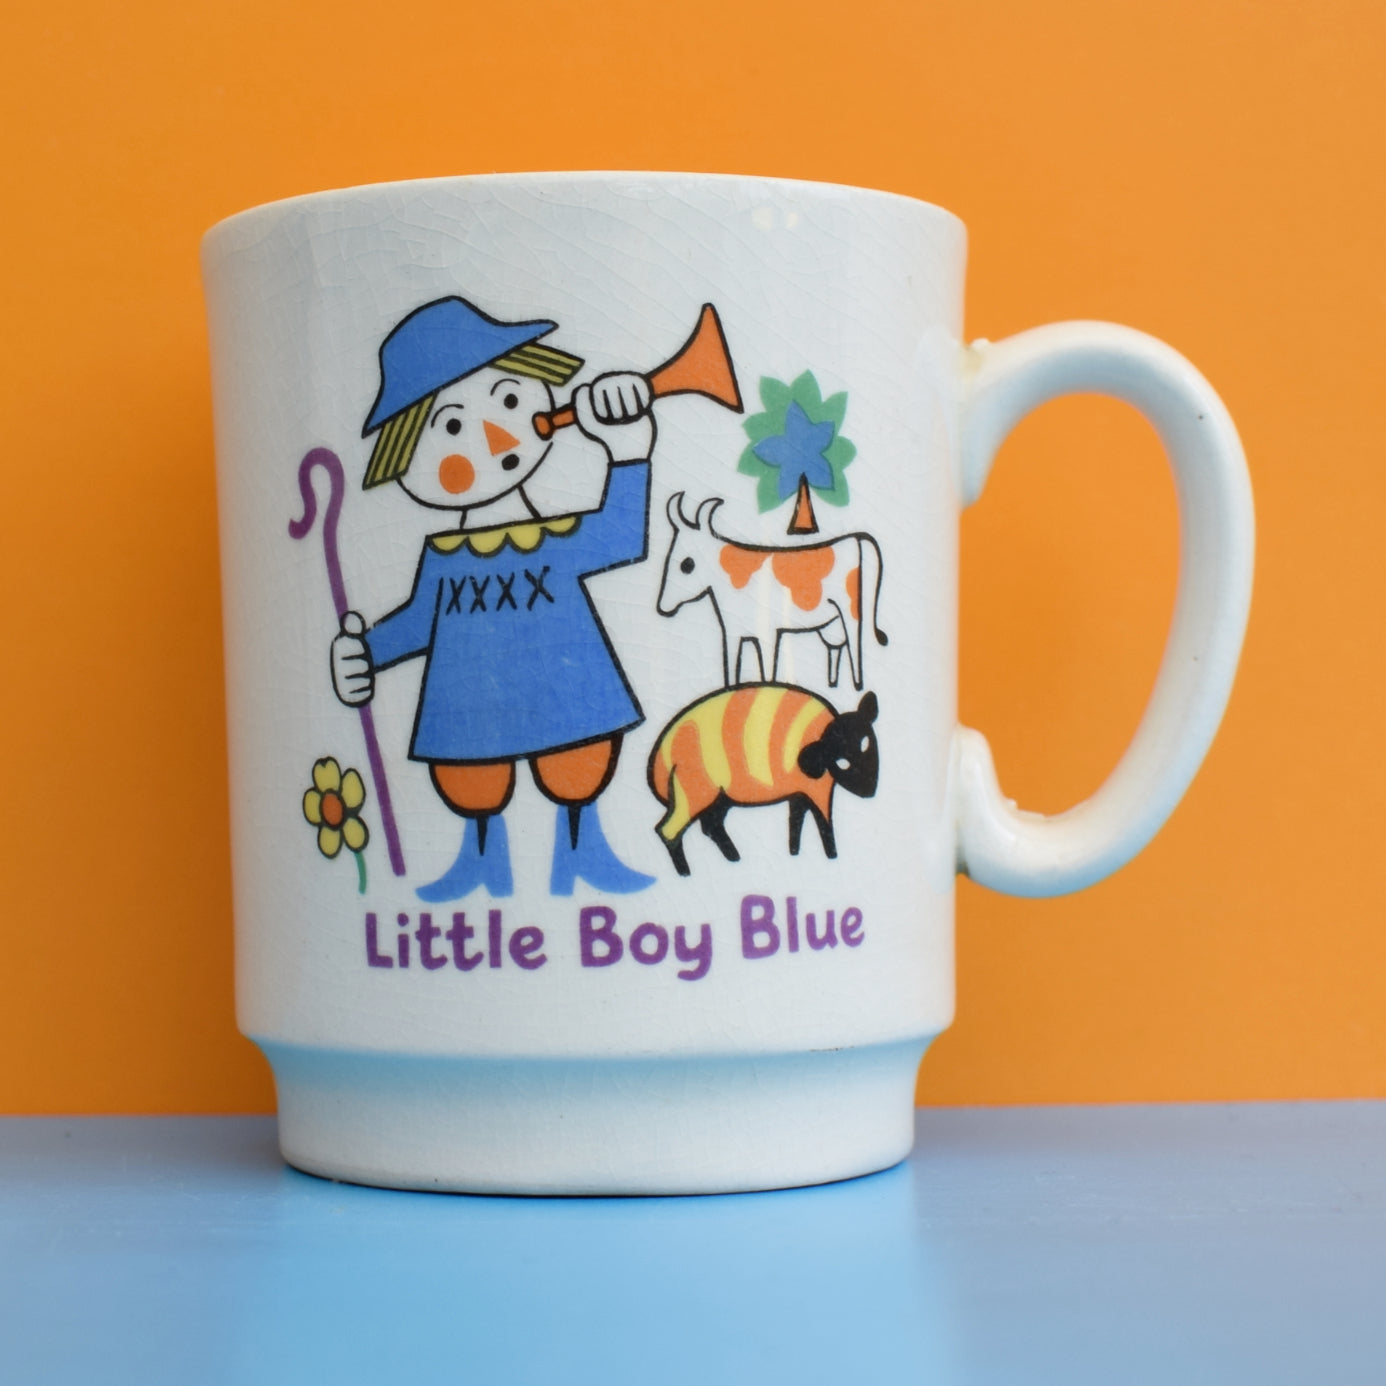 Vintage 1960s Childs Ceramic Mug - Little Boy Blue